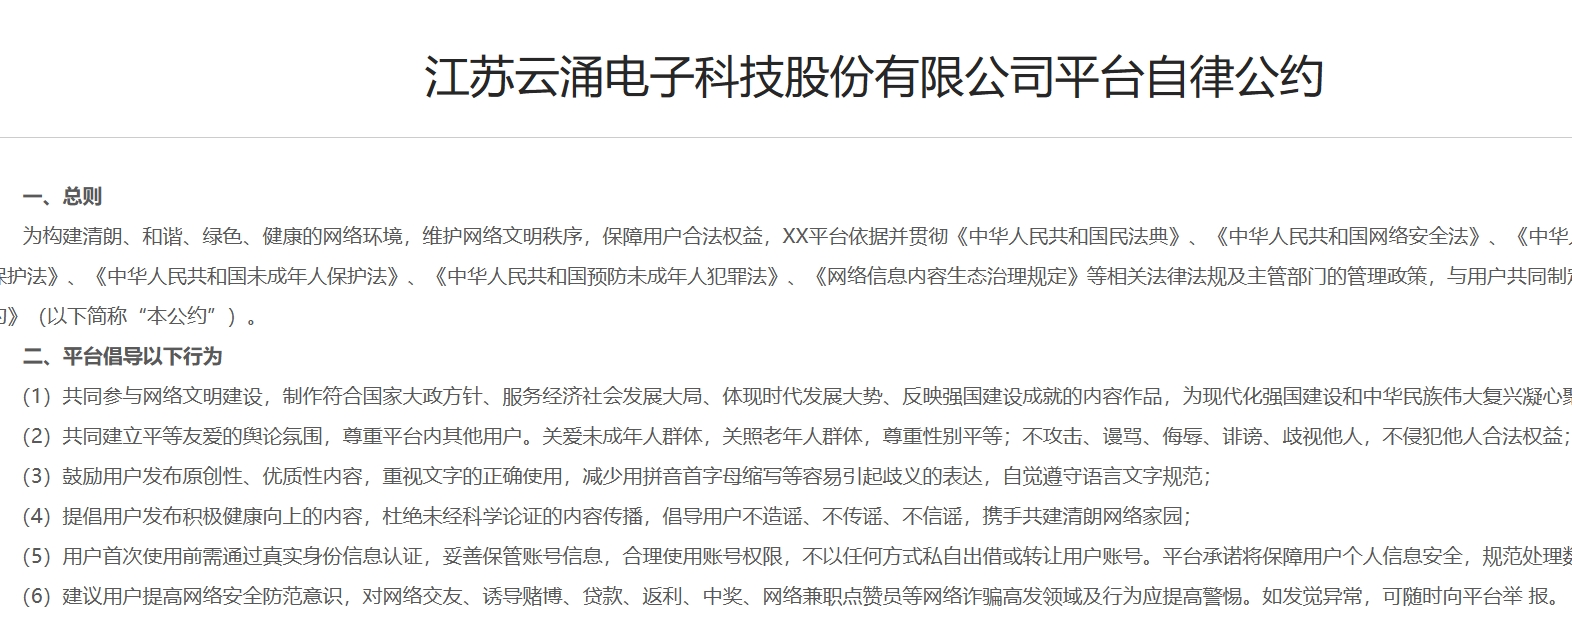 江苏云涌电子科技股份有限公司平台自律公约